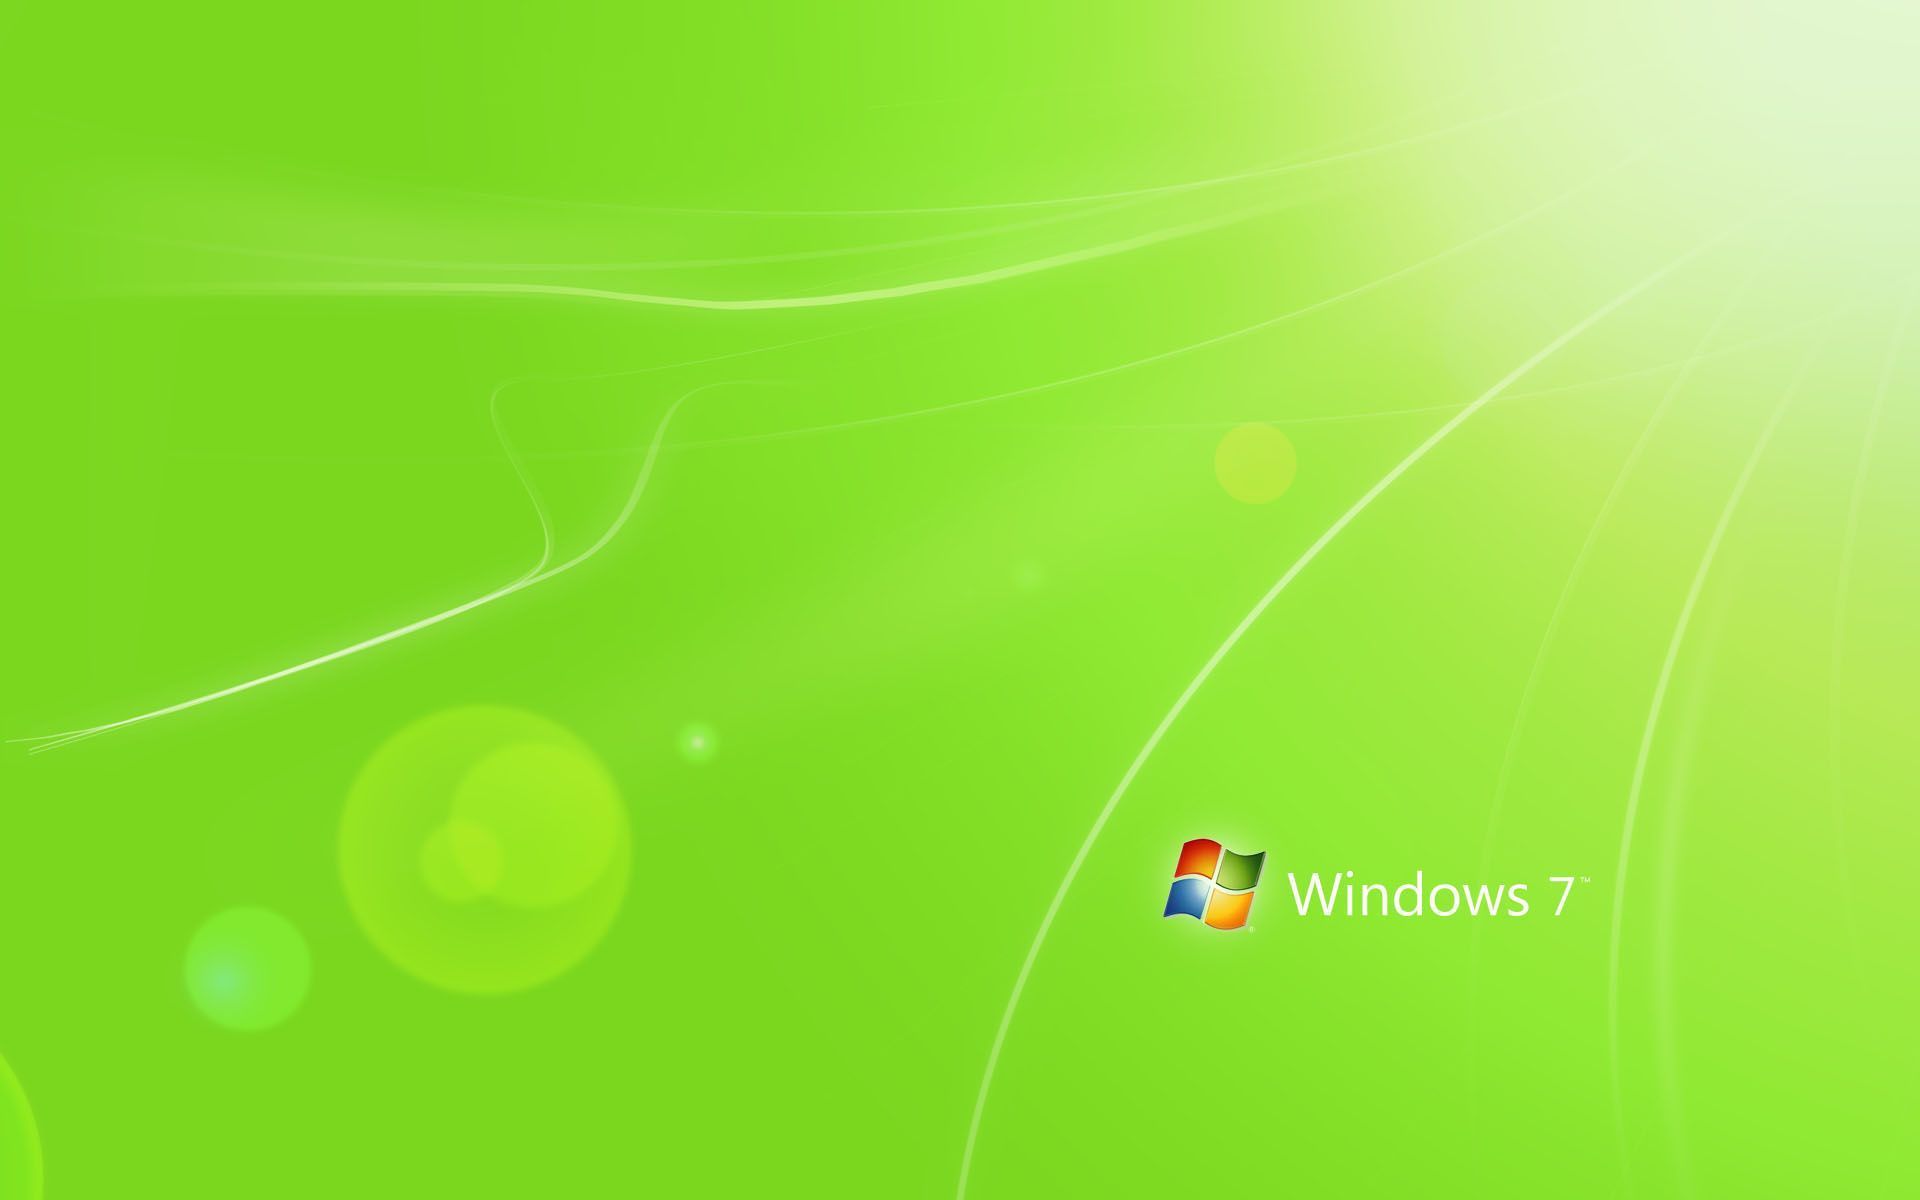 Windows 7 Green Wallpaper